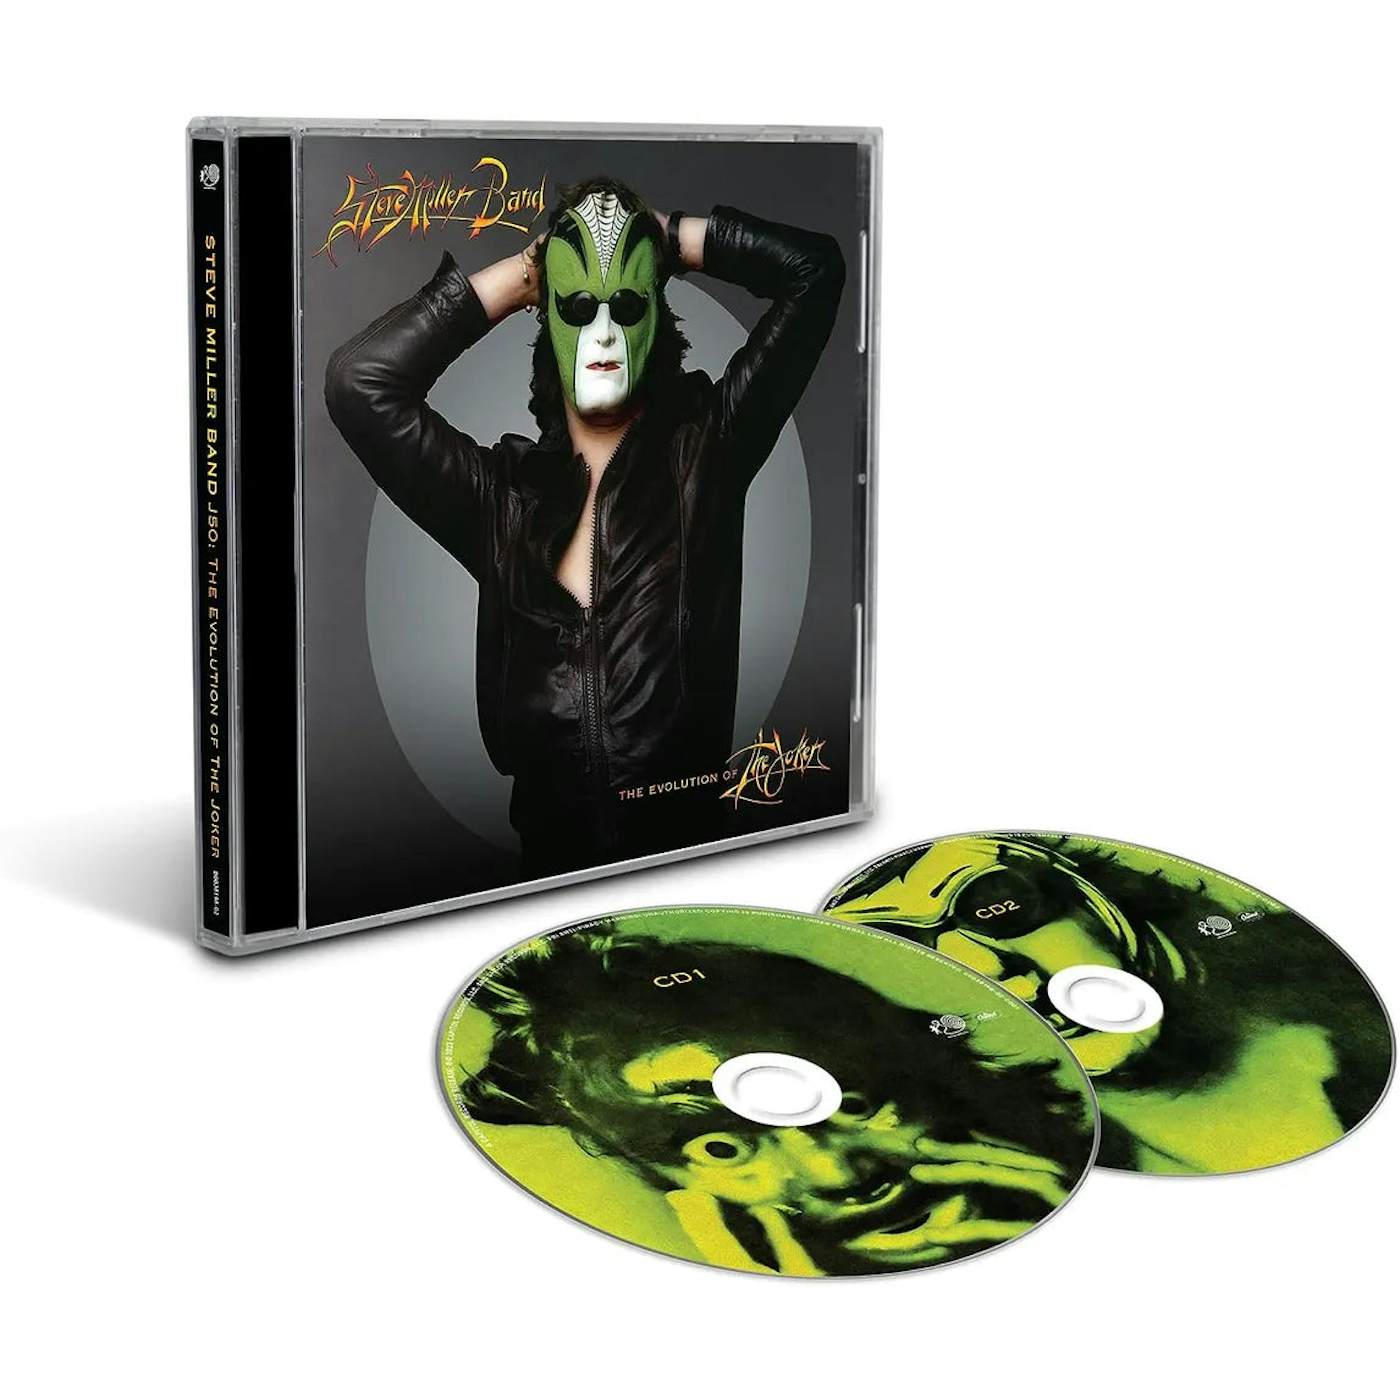 Steve Miller Band - J50: The Evolution of The Joker CD